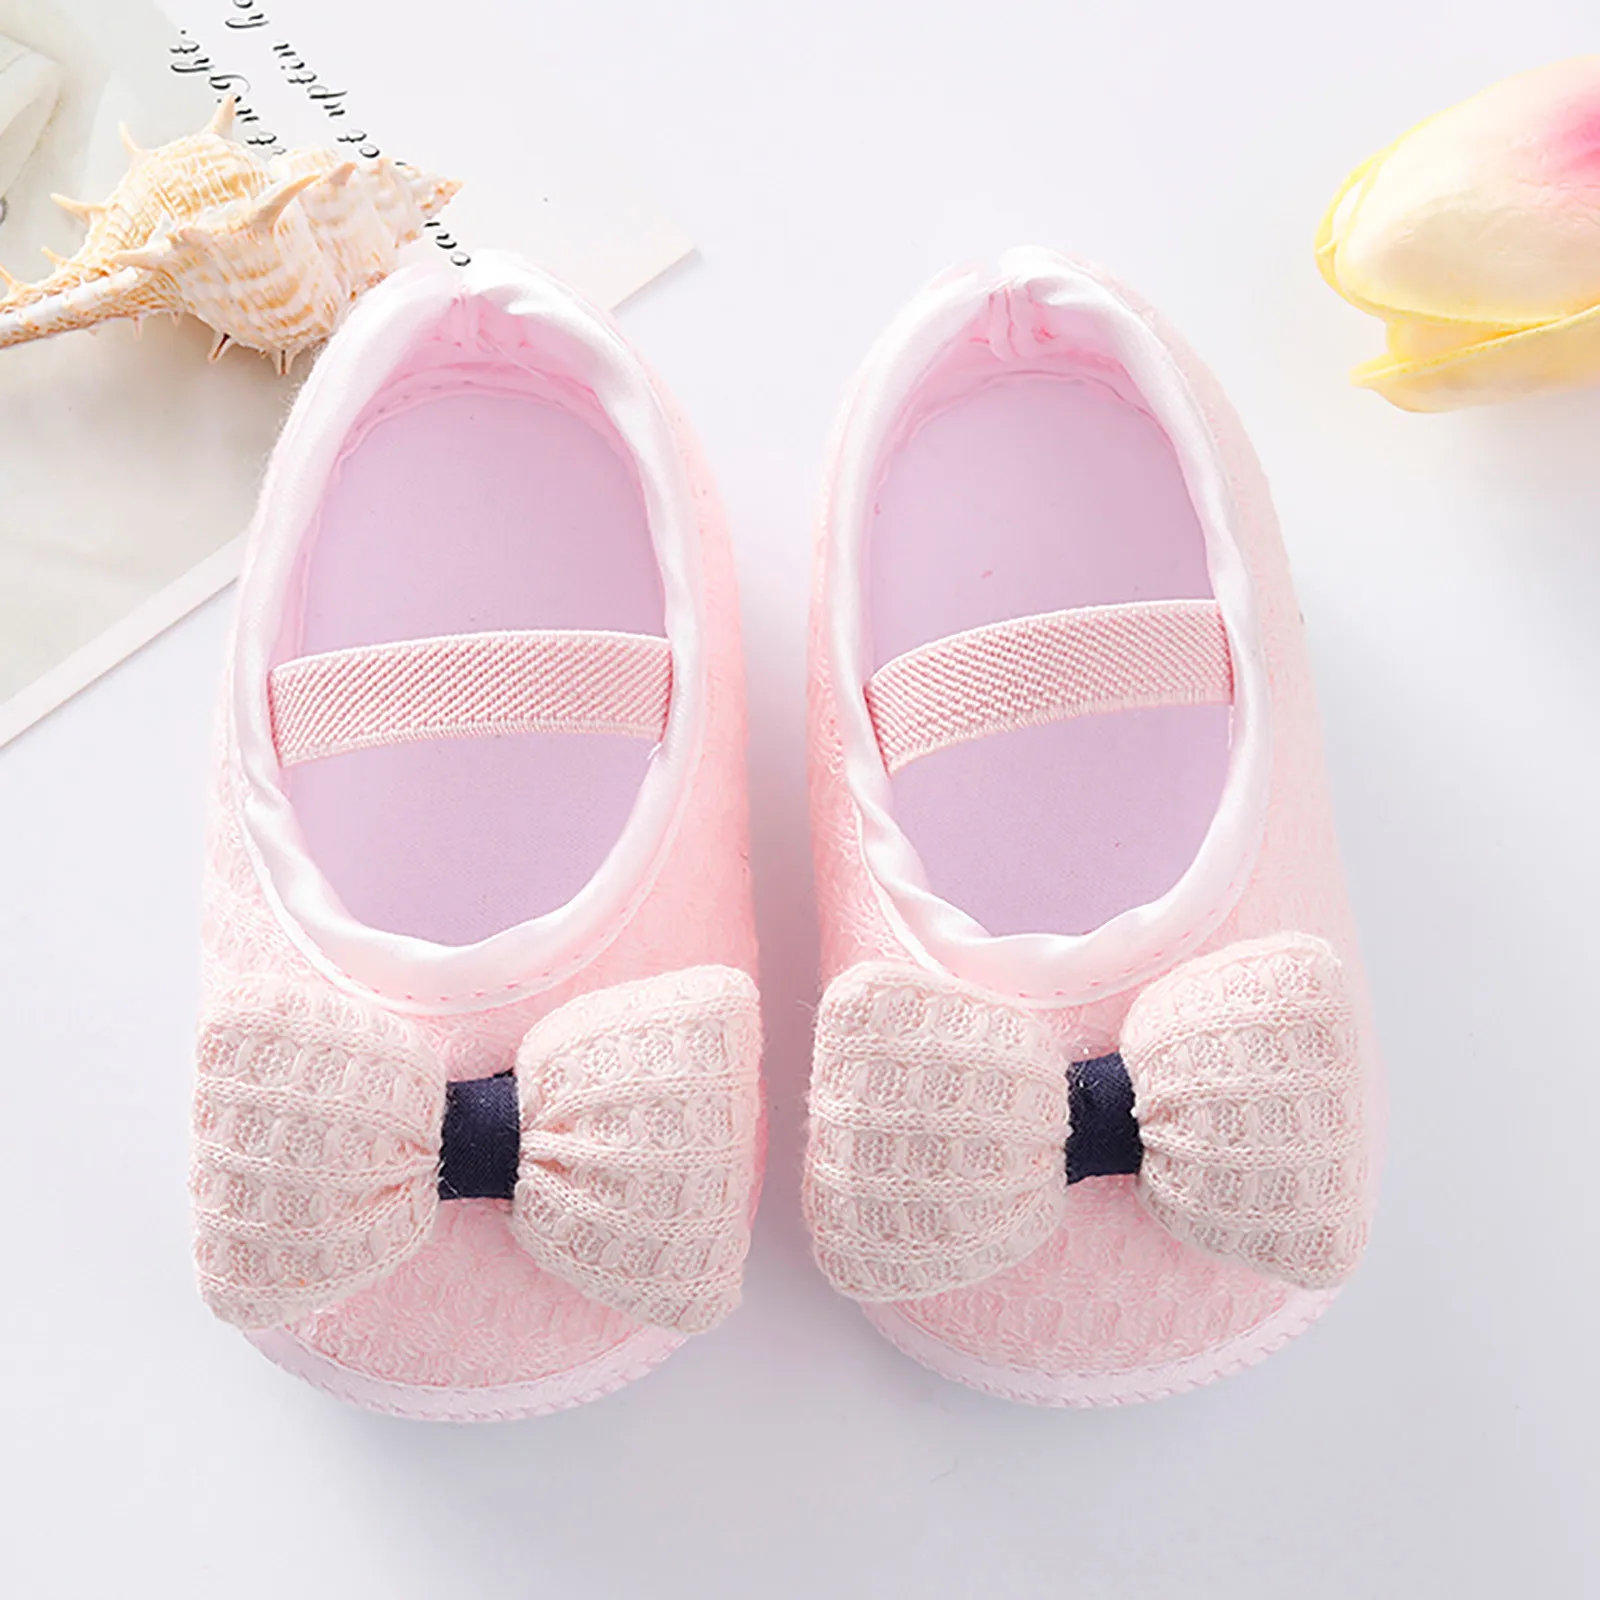 Siyova Bowknot Chaussures pour bébé avec semelle souple en polyuréthane antidérapante princesse pour fille pour garçon fille 